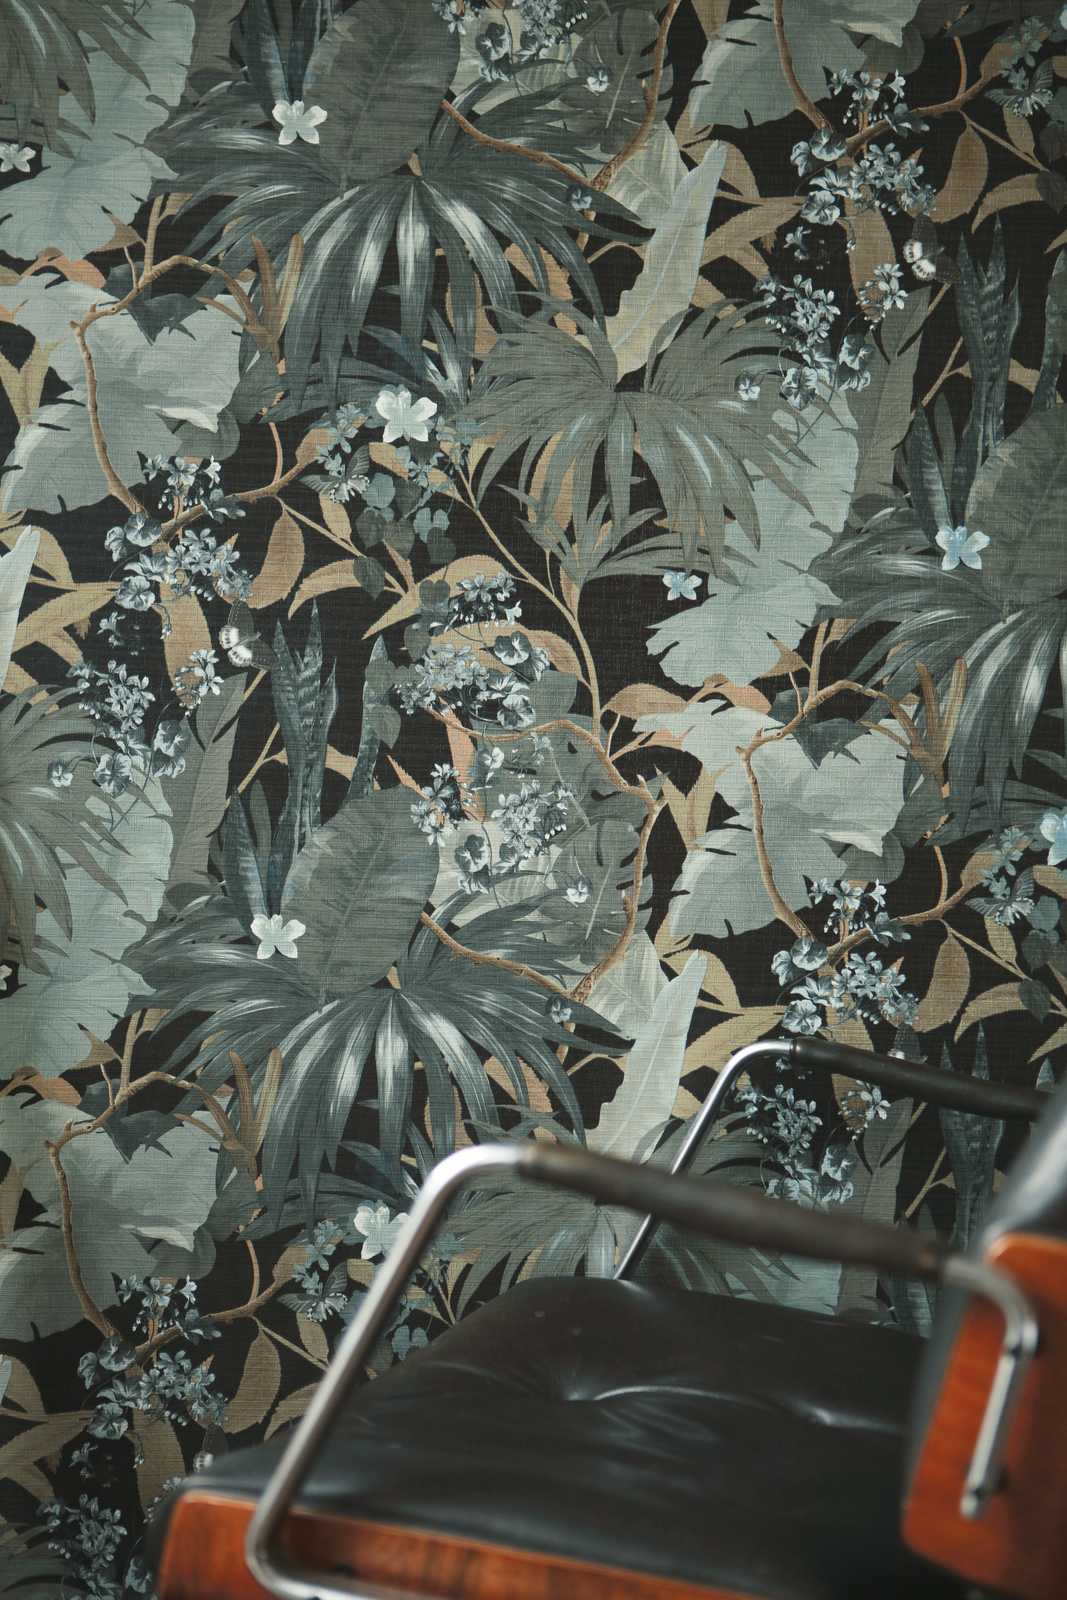             behang jungle design met bladmotief - grijs, groen
        